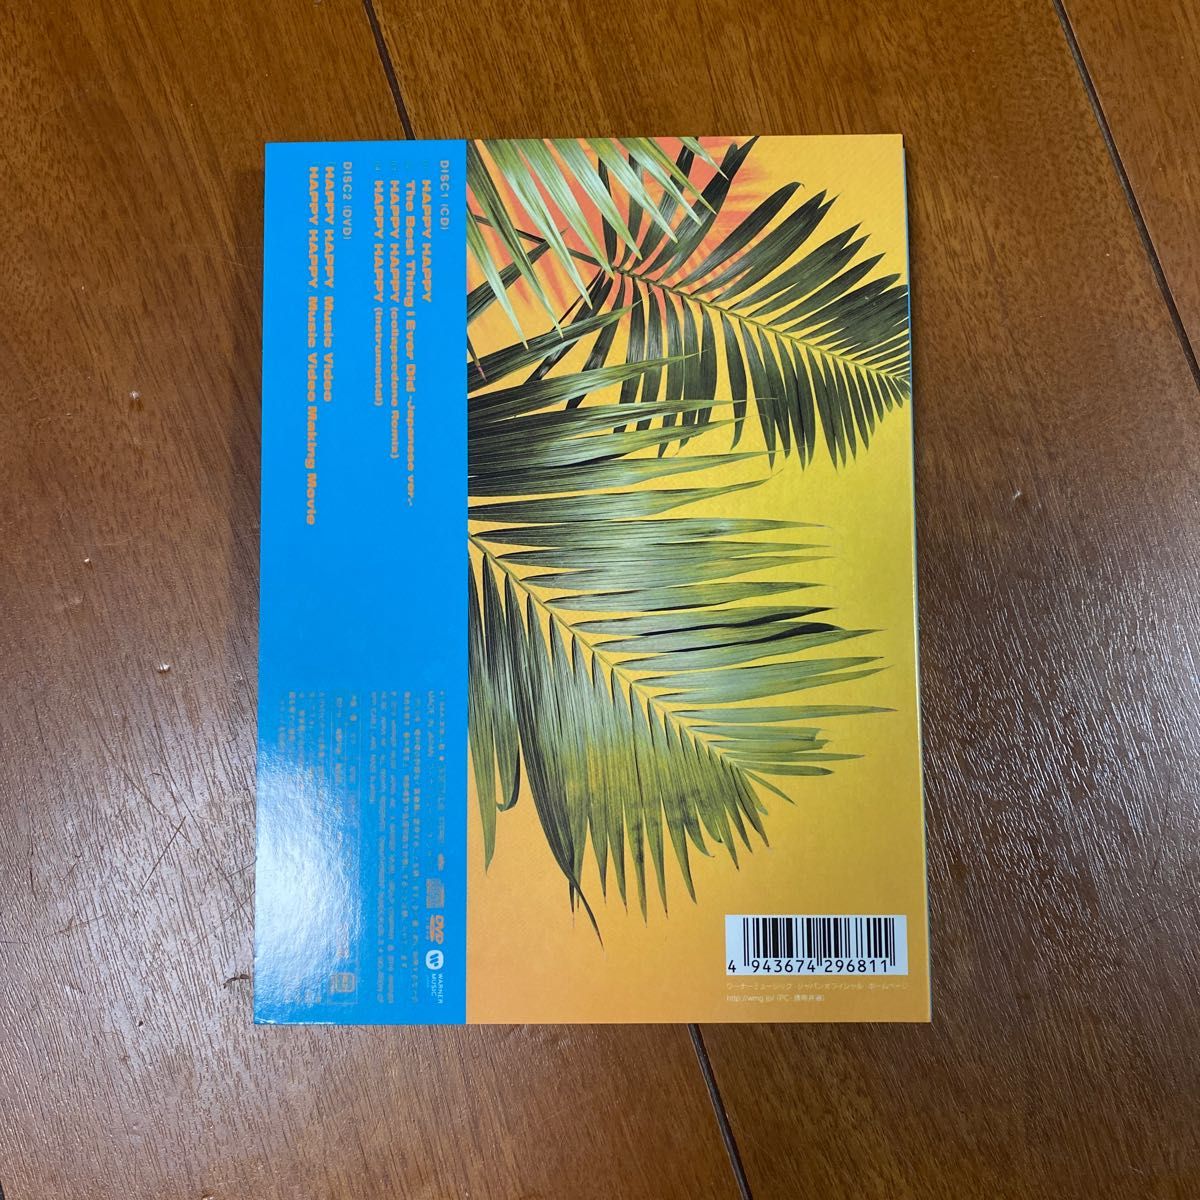 初回限定盤A (取) TWICE CD+DVD/HAPPY HAPPY 19/7/17発売 オリコン加盟店